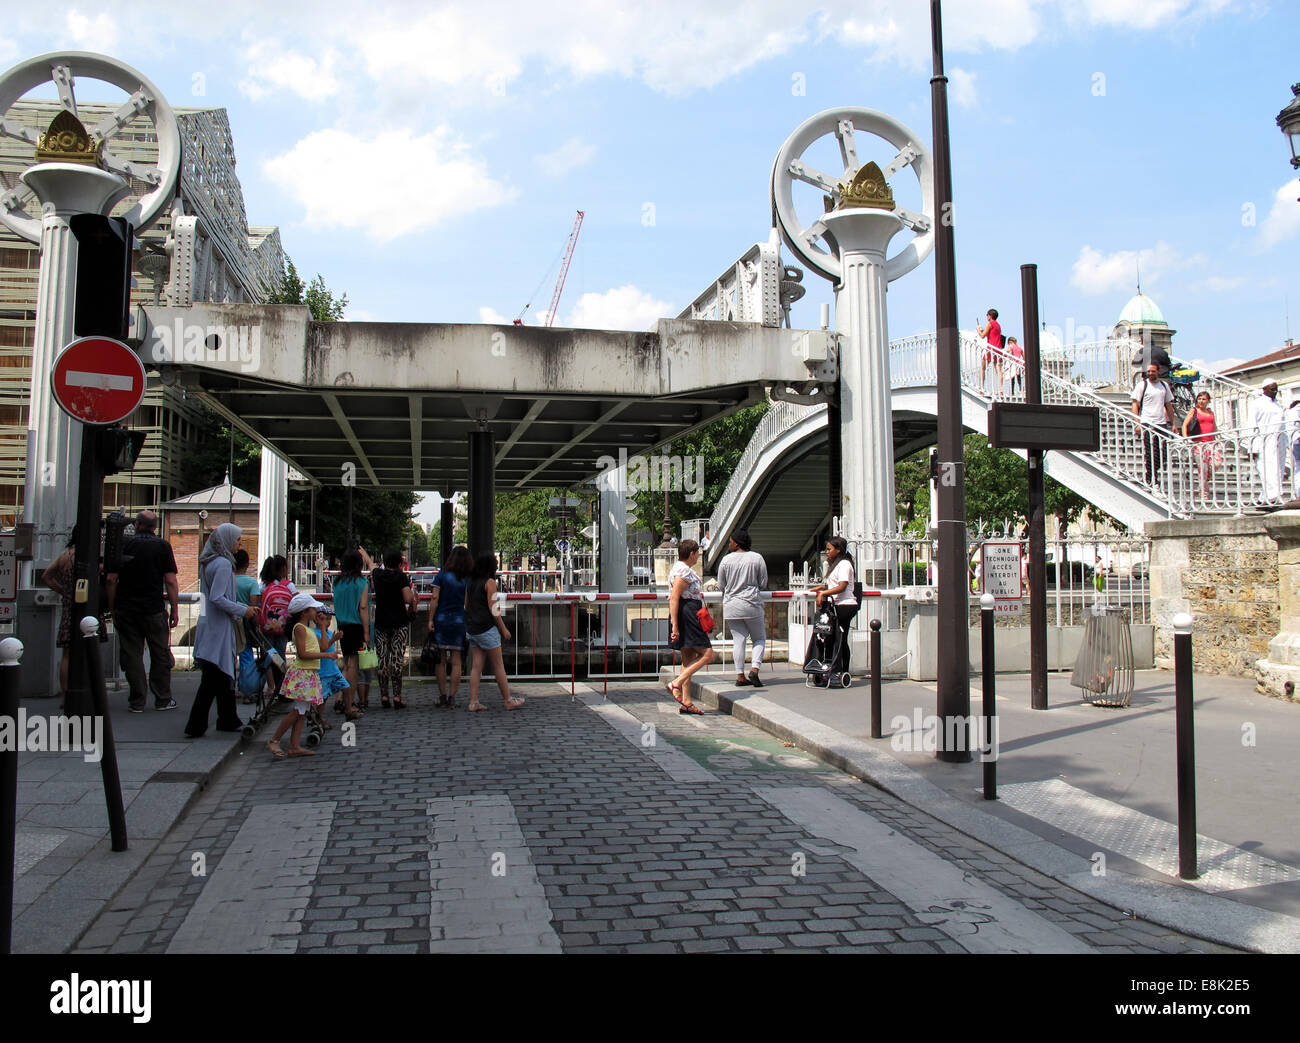 Pont levant de Crimee,Lift bridge Crimea,general stores,Bassin de la Villette,canal Saint-Martin,Paris,France Stock Photo